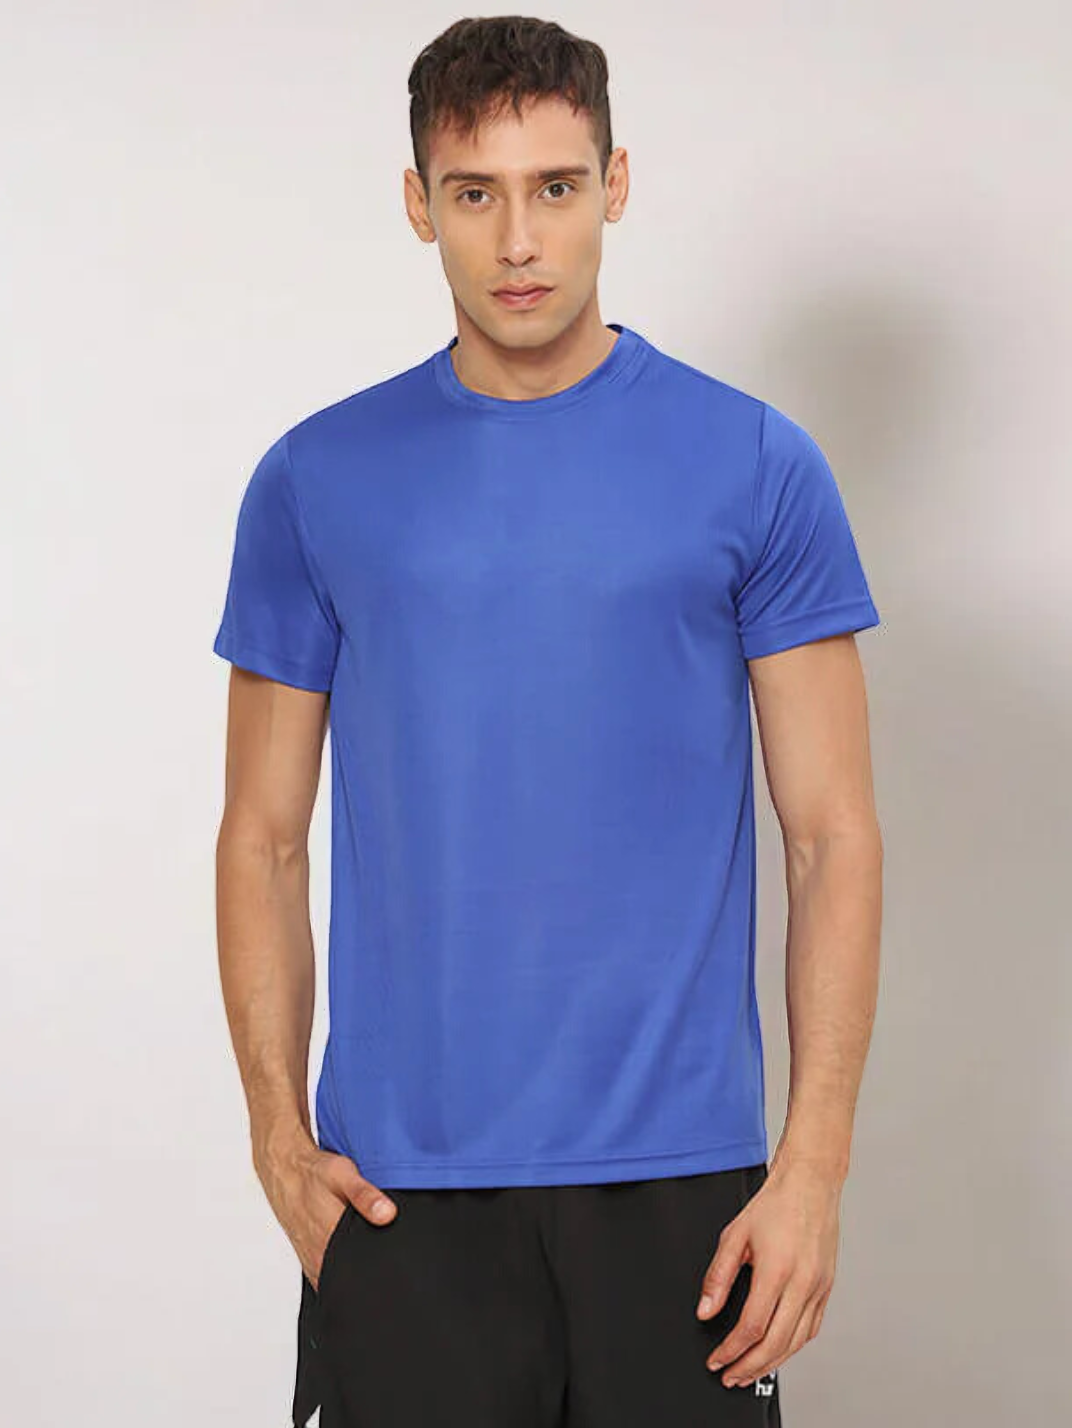 Budoc Men's Polyester T-shirt for men in Dark Blue